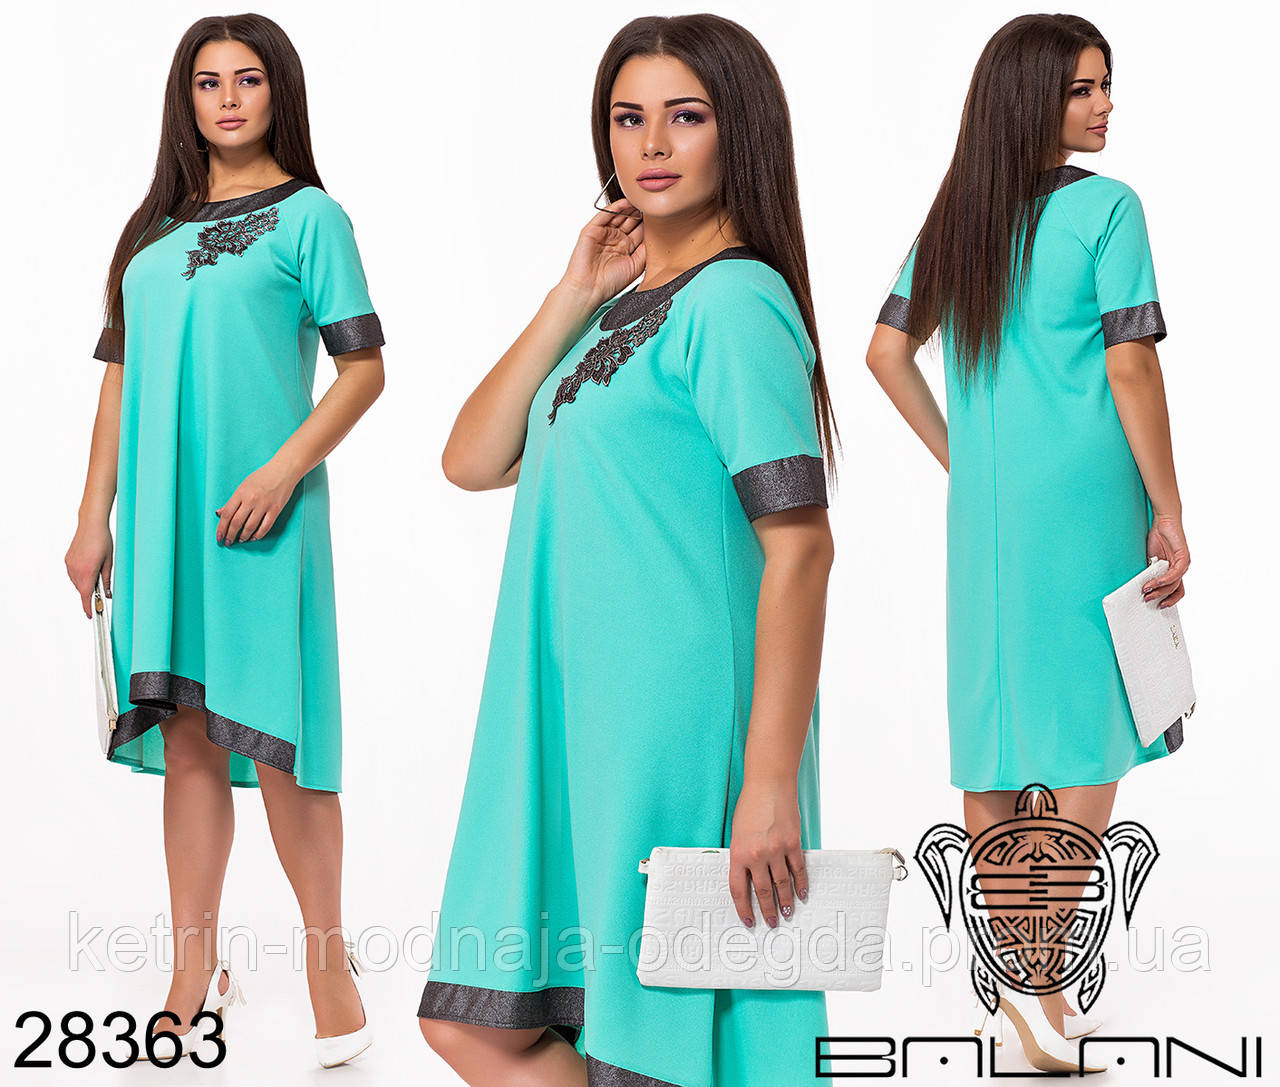 

Нарядное элегантное асимметричное женское платье свободного кроя больших размеров 48 - 62